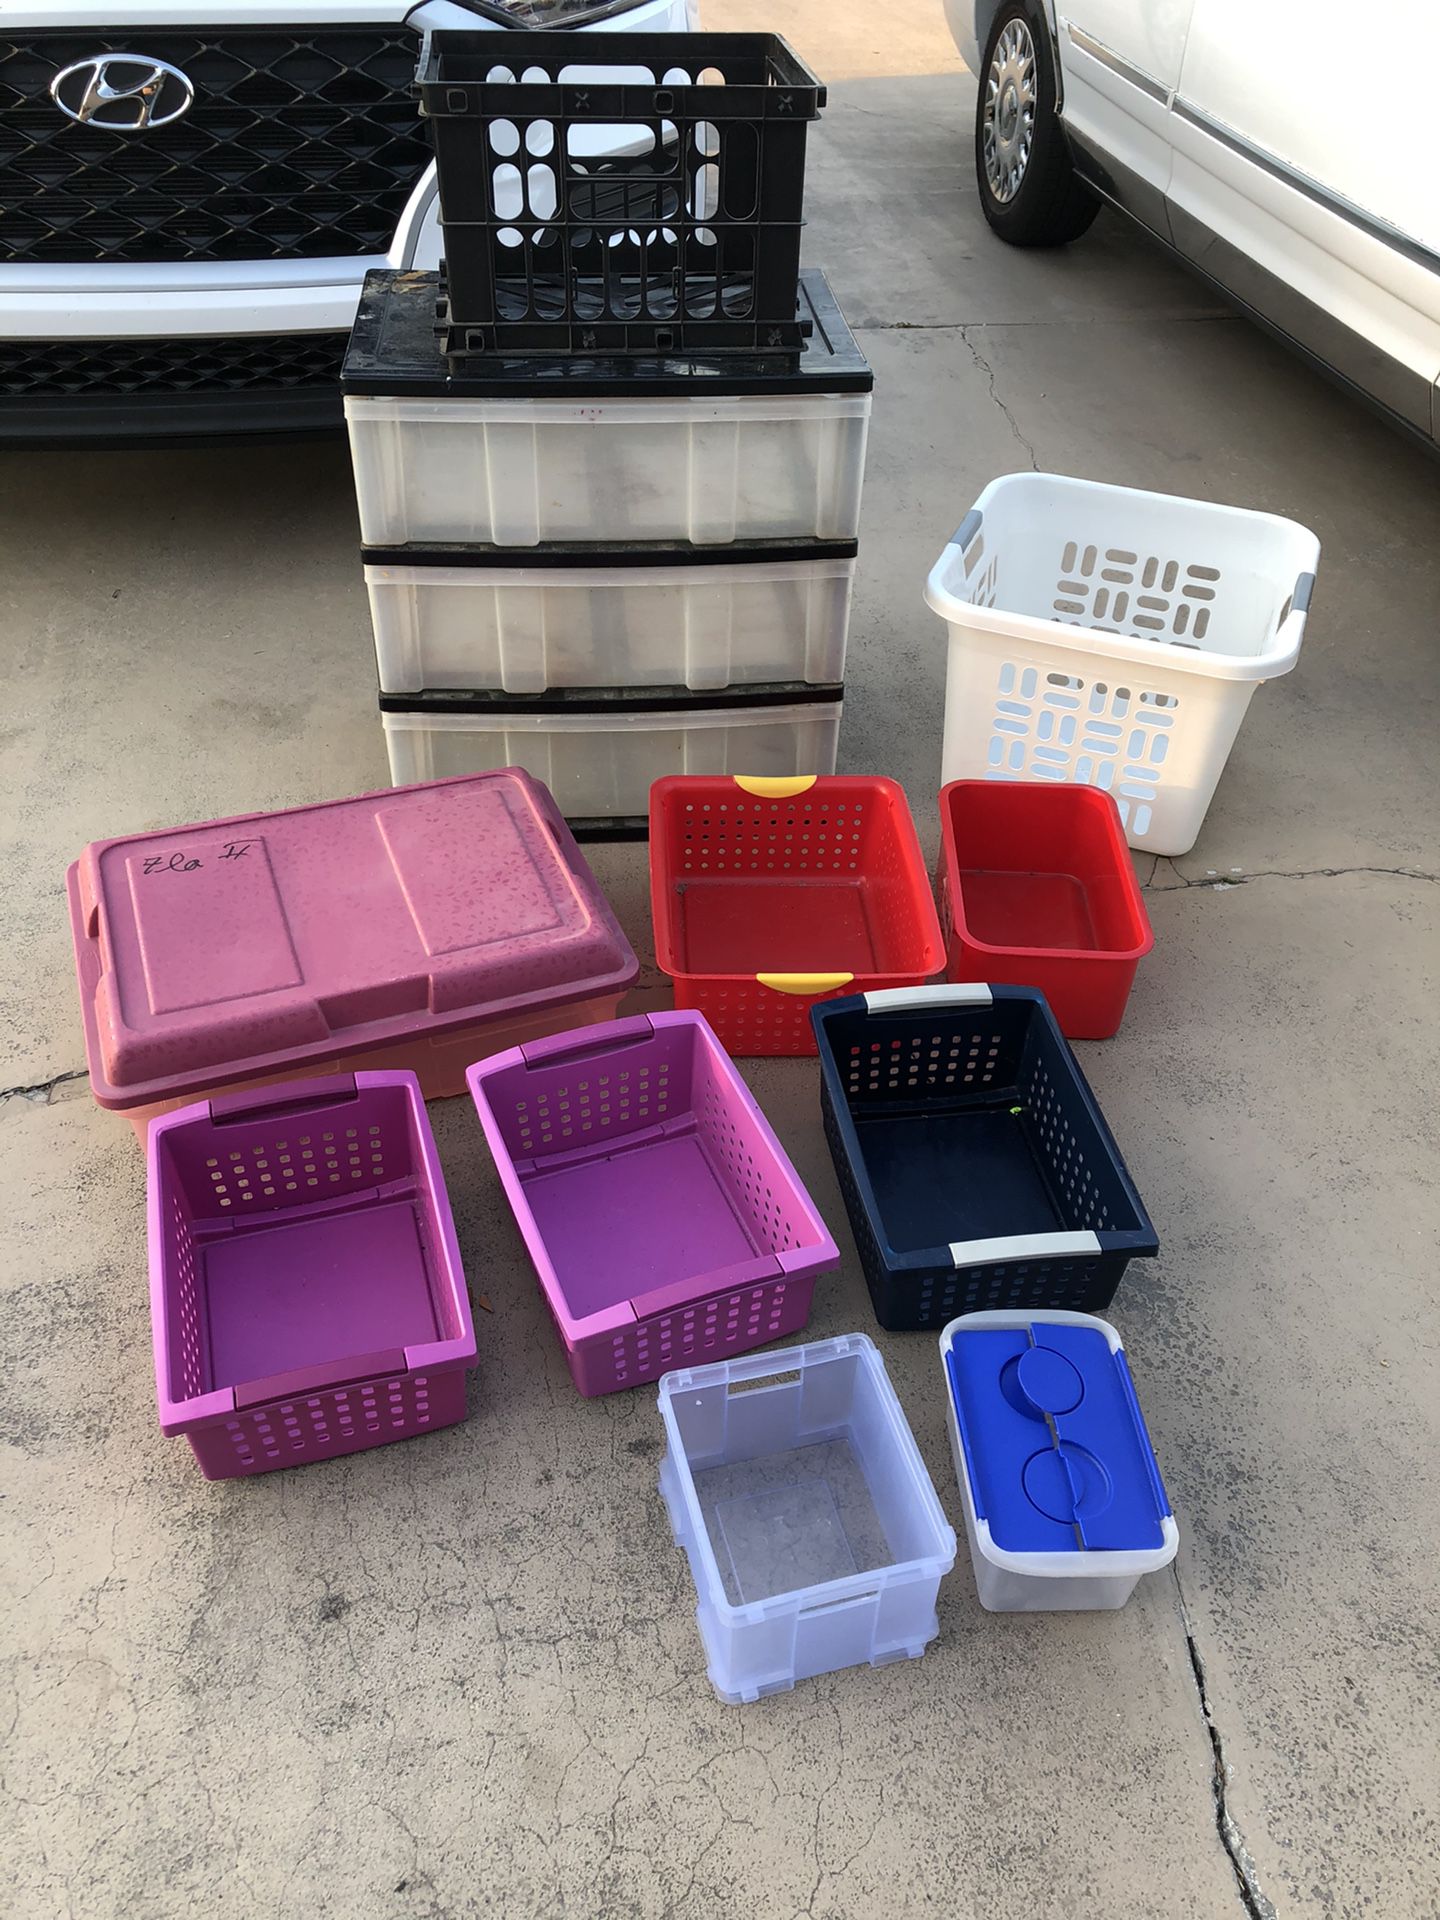 Toy organizing bins